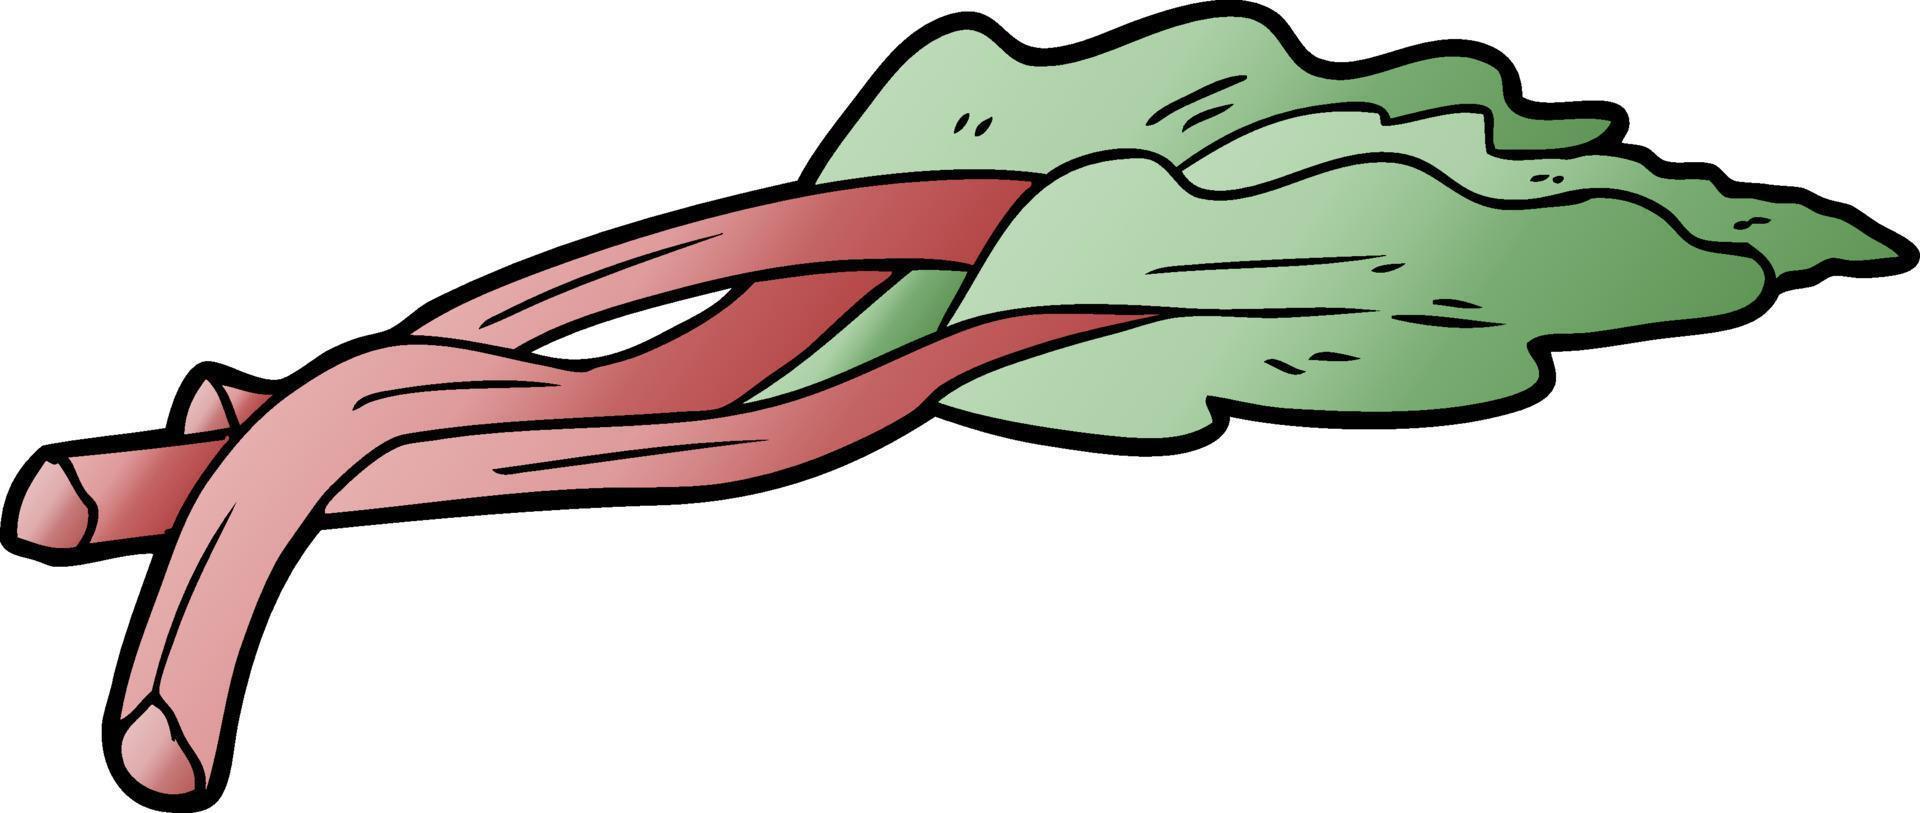 vector cartoon rhubarb